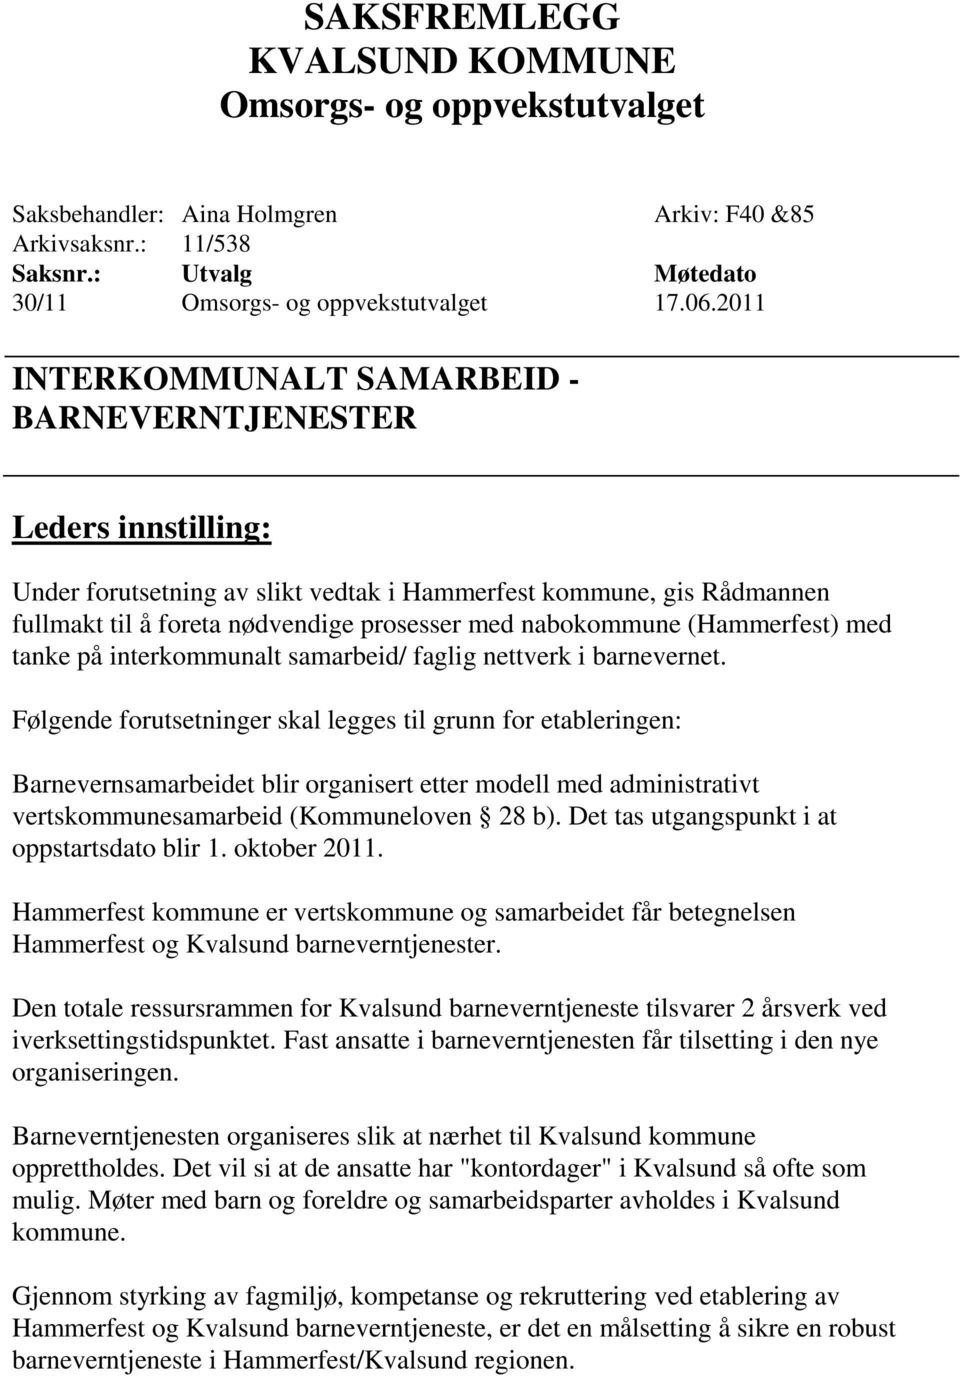 nabokommune (Hammerfest) med tanke på interkommunalt samarbeid/ faglig nettverk i barnevernet.